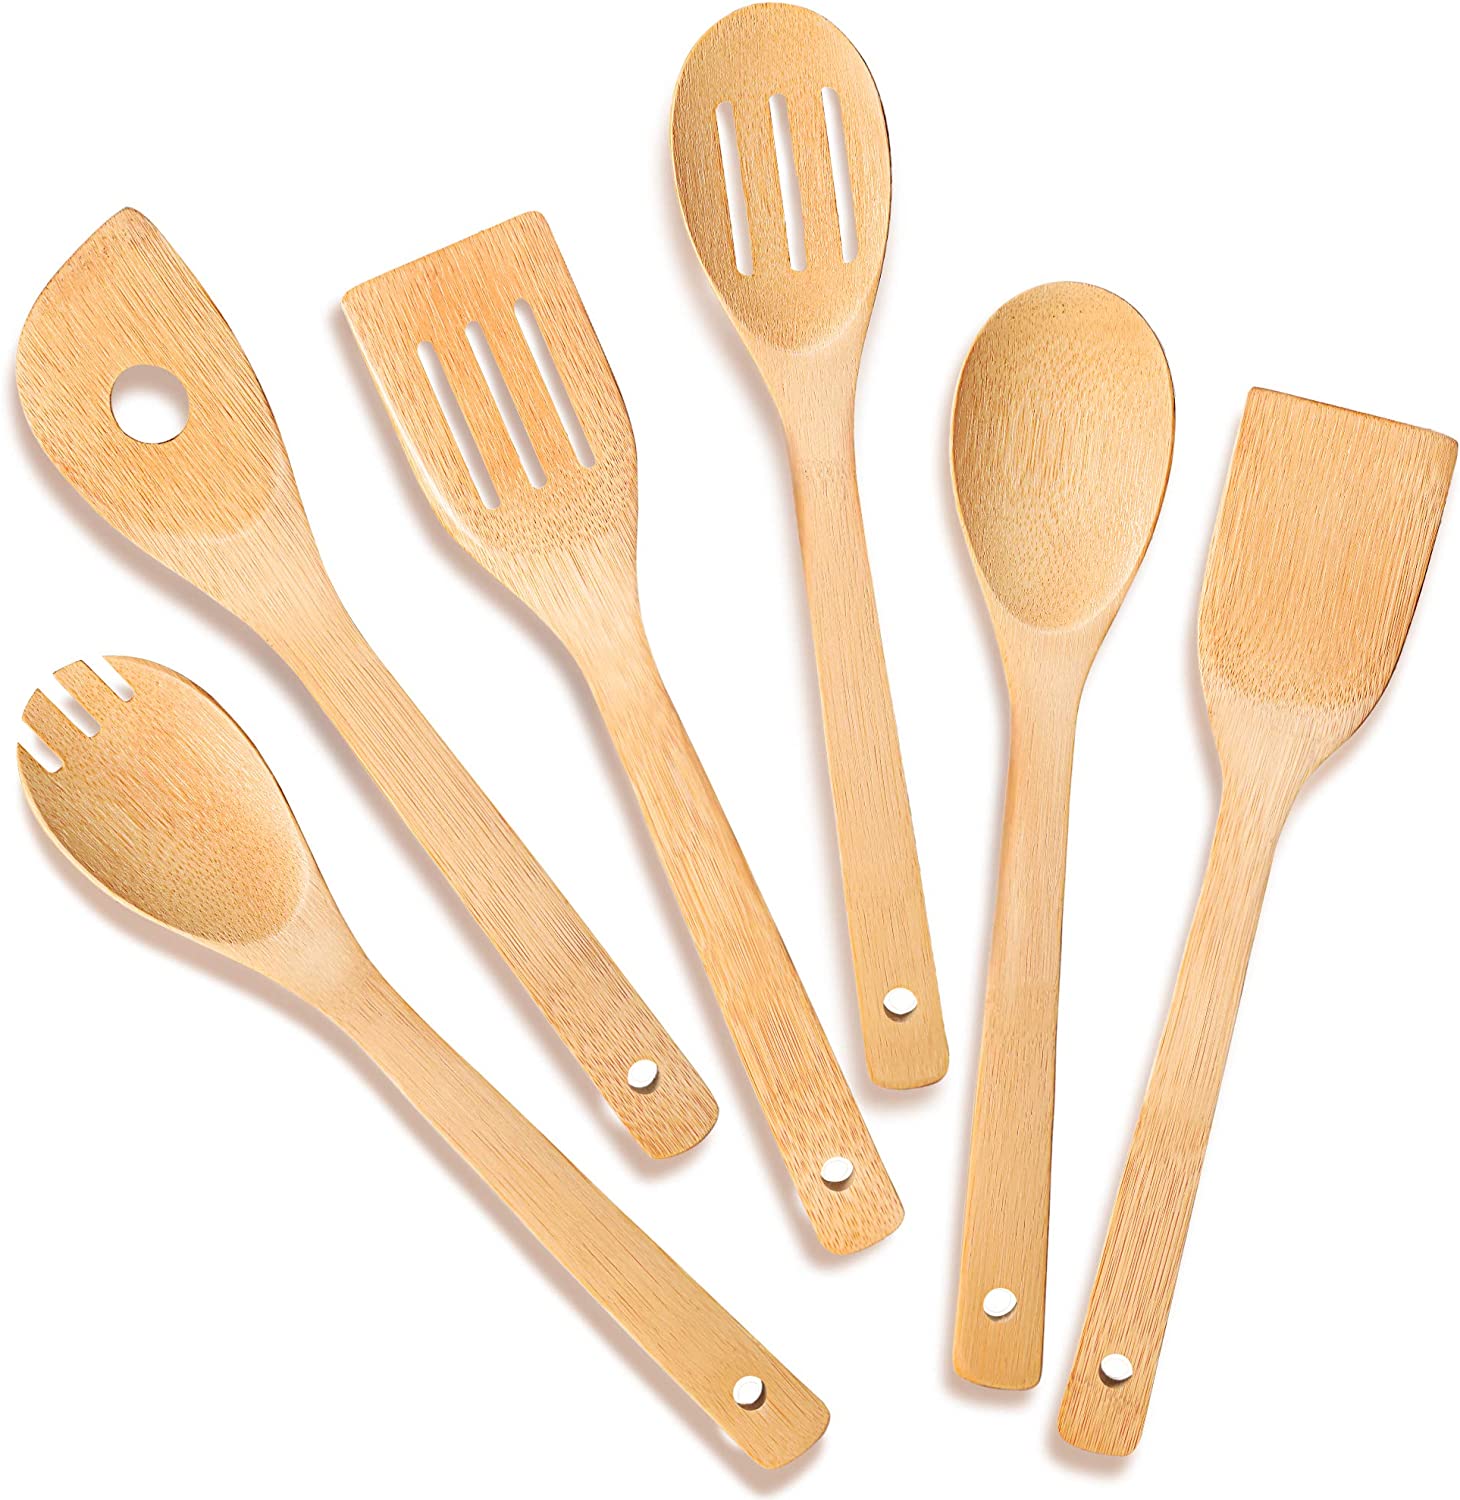 IOOLEEM Easy Clean Nonstick Wooden Spoon & Spoon Set, 6-Piece